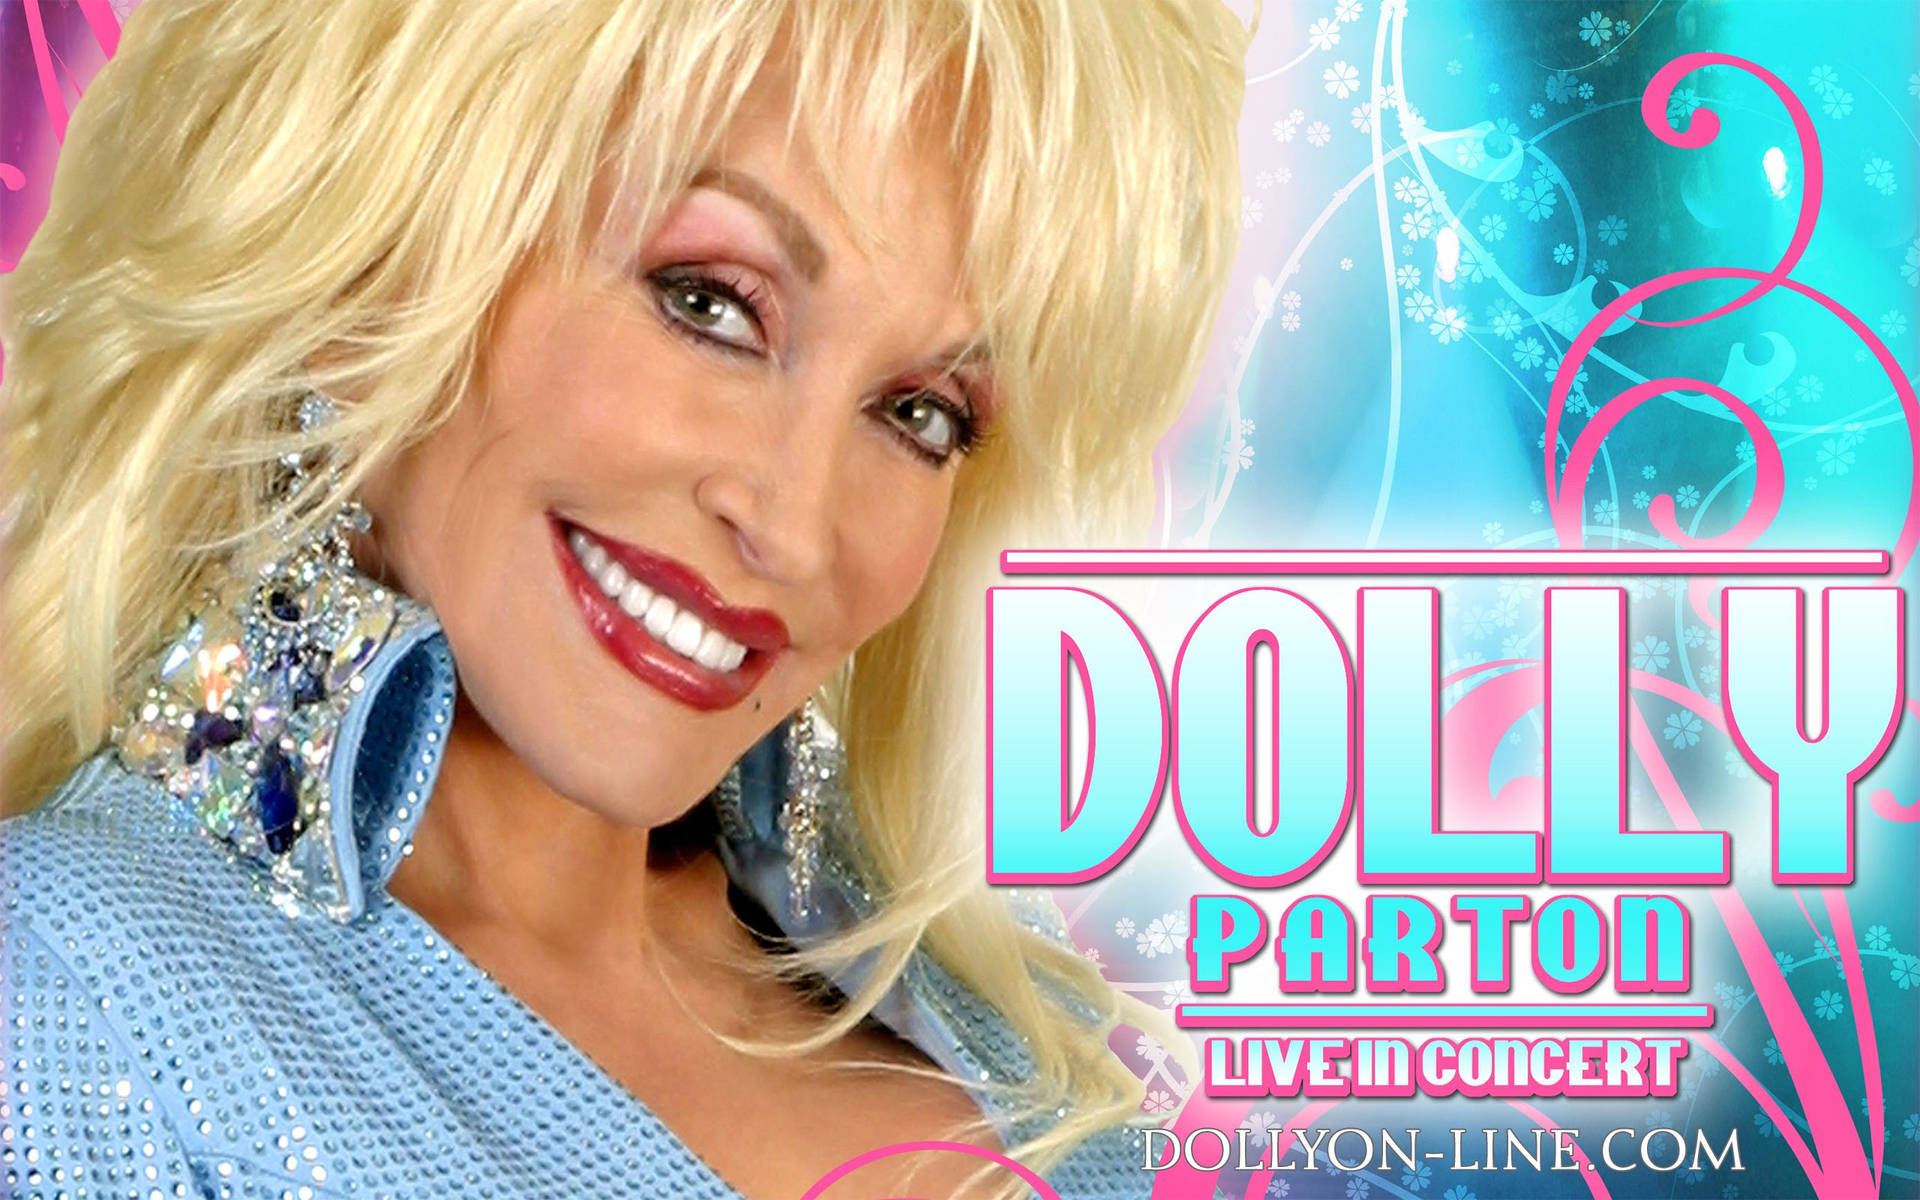 Dolly Parton Poster Photograph